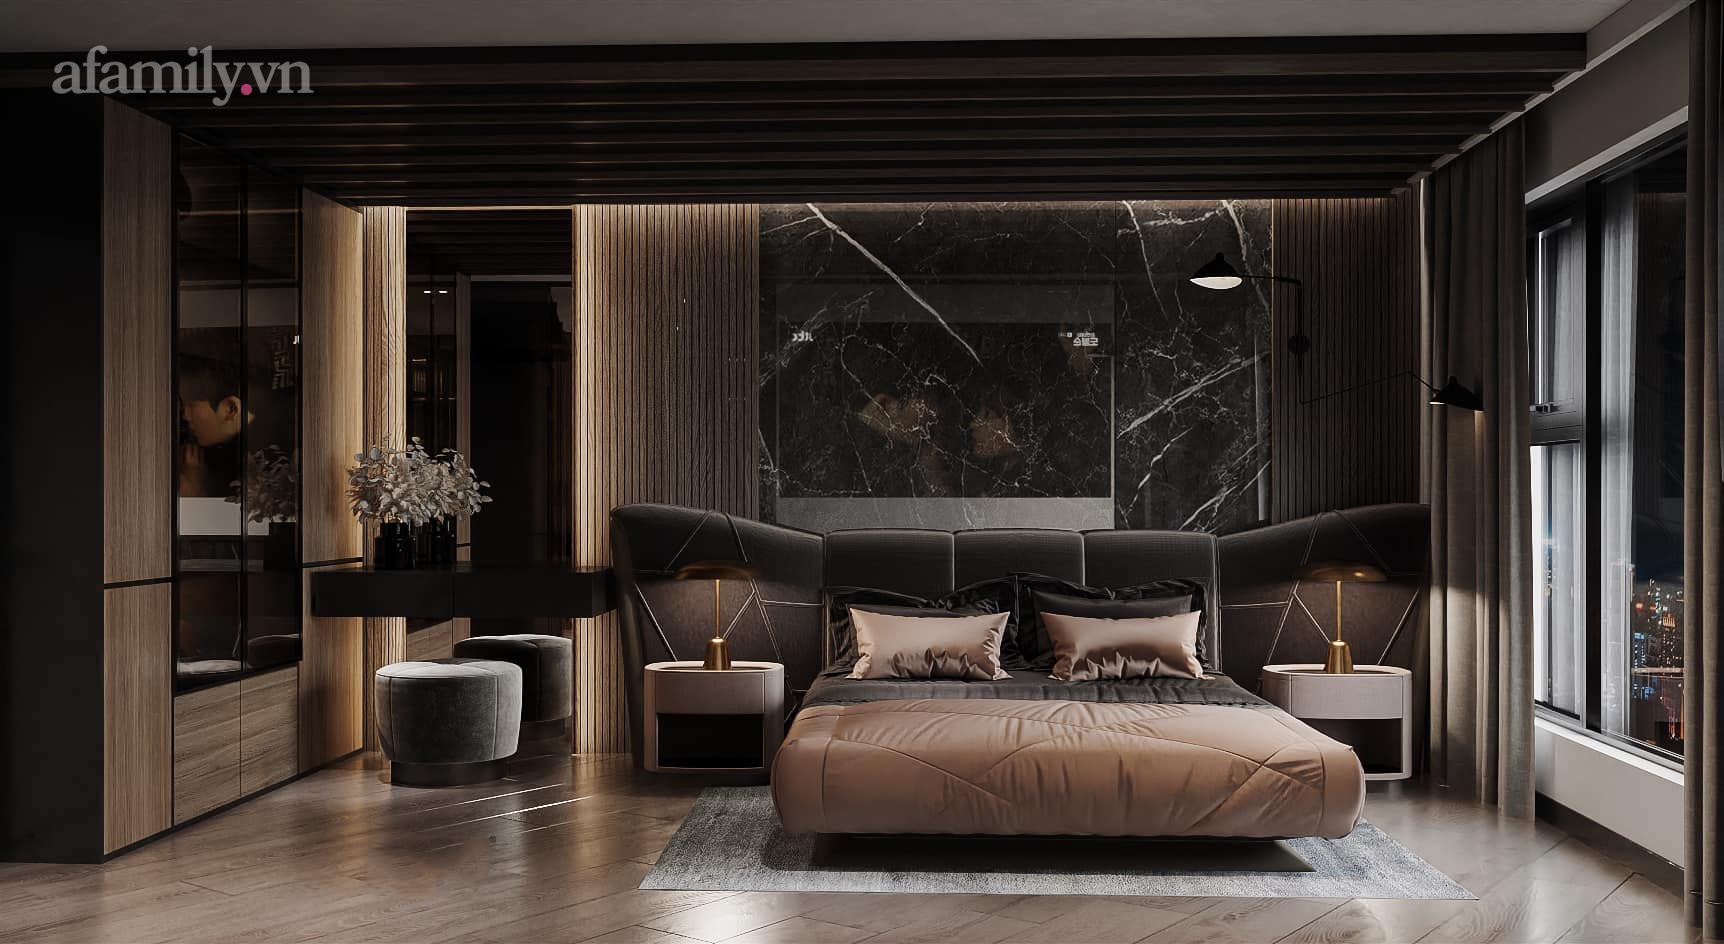 Căn penthouse duplex của nữ CEO Hà Nội bao trọn view sông Hồng, thiết kế luxury hiện đại tone chủ đạo nâu đen cực huyền bí - Ảnh 5.